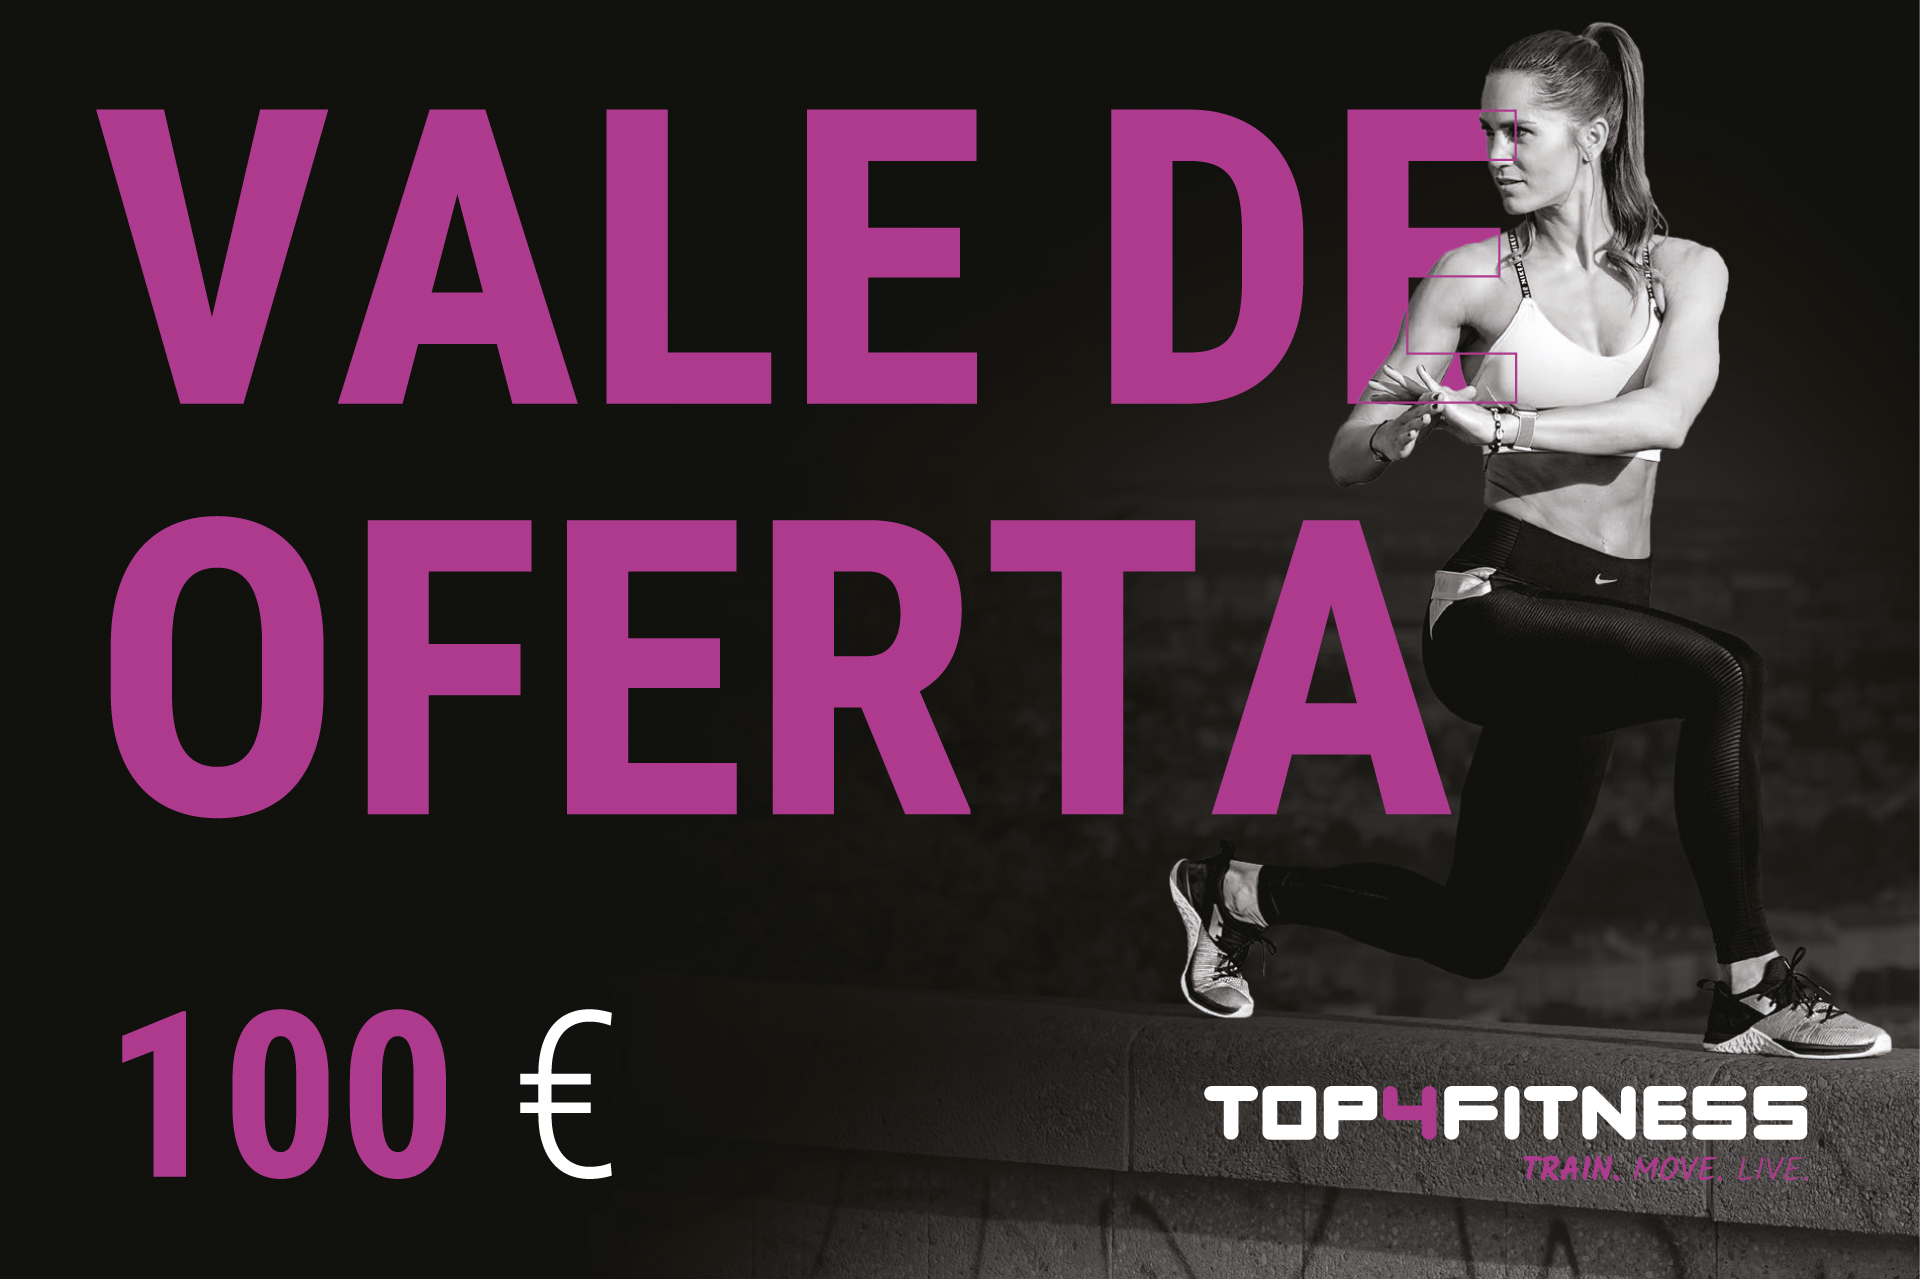 Top4fitness Vale de oferta no valor de 100€